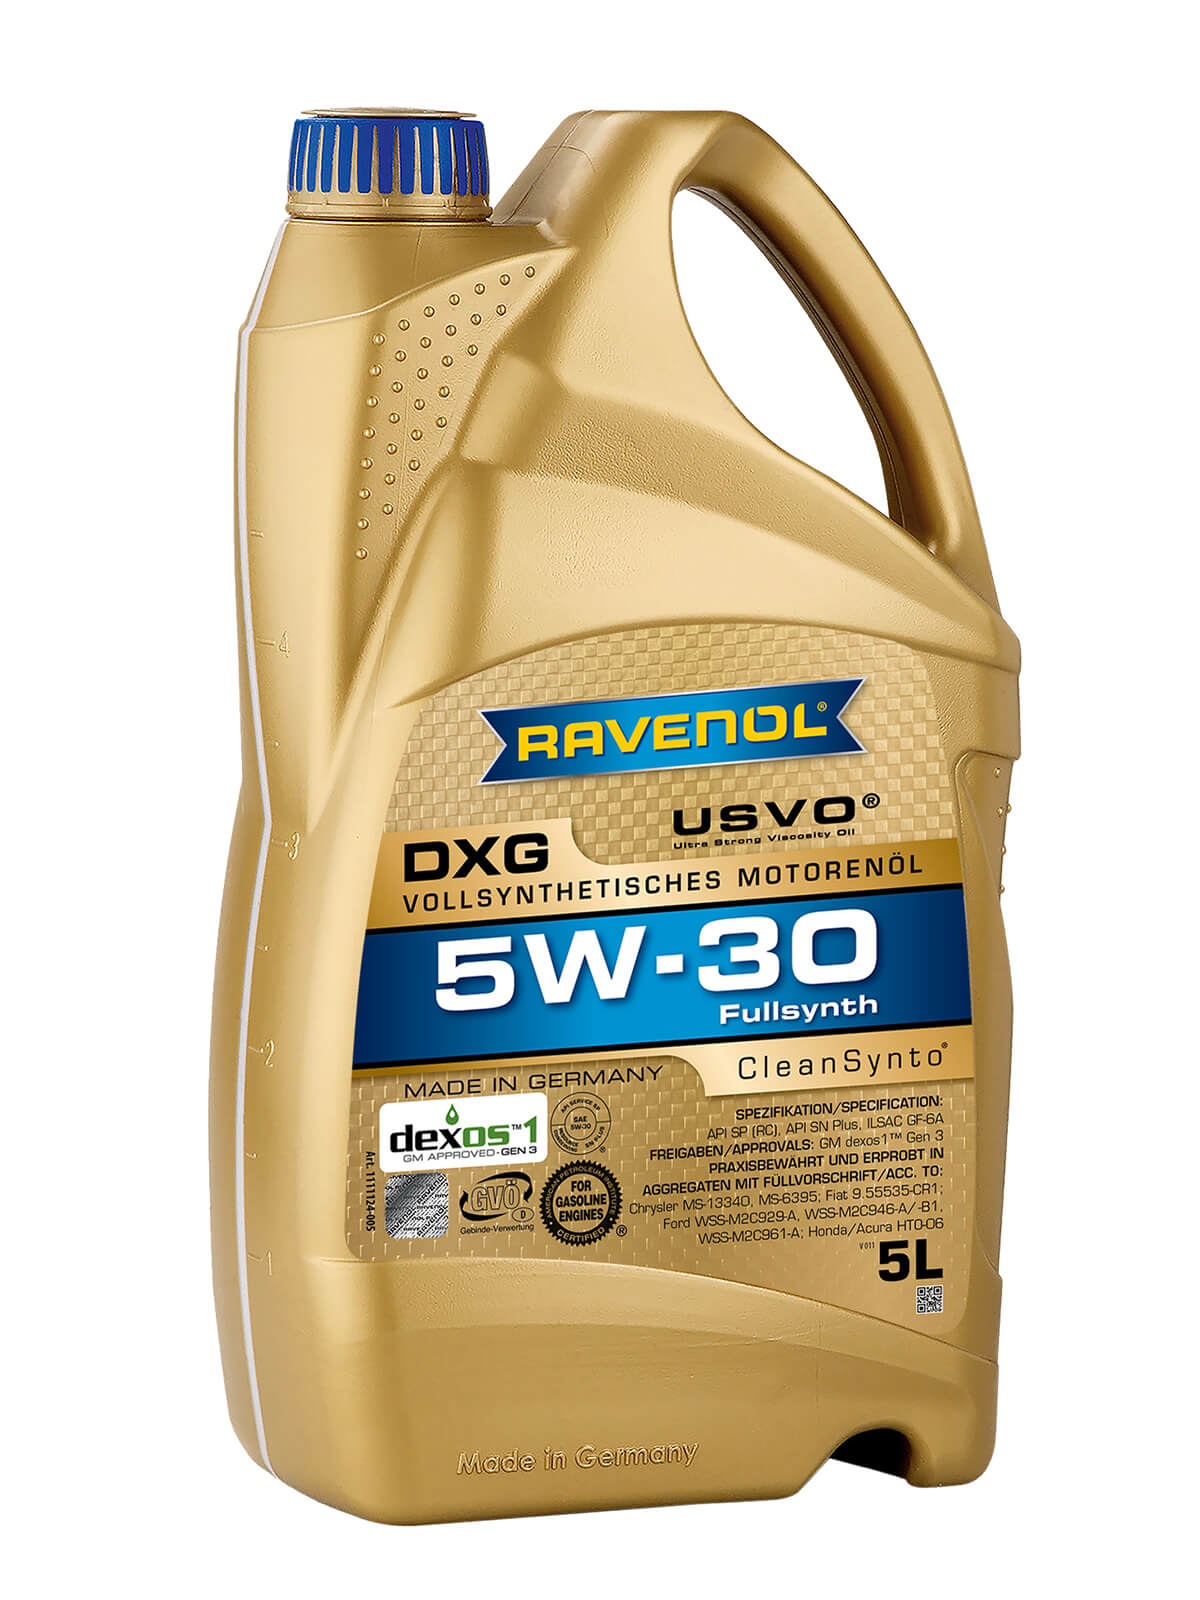 Motoröl Ravenol DXG 5W-30 direkt im Ravenol Shop kaufen